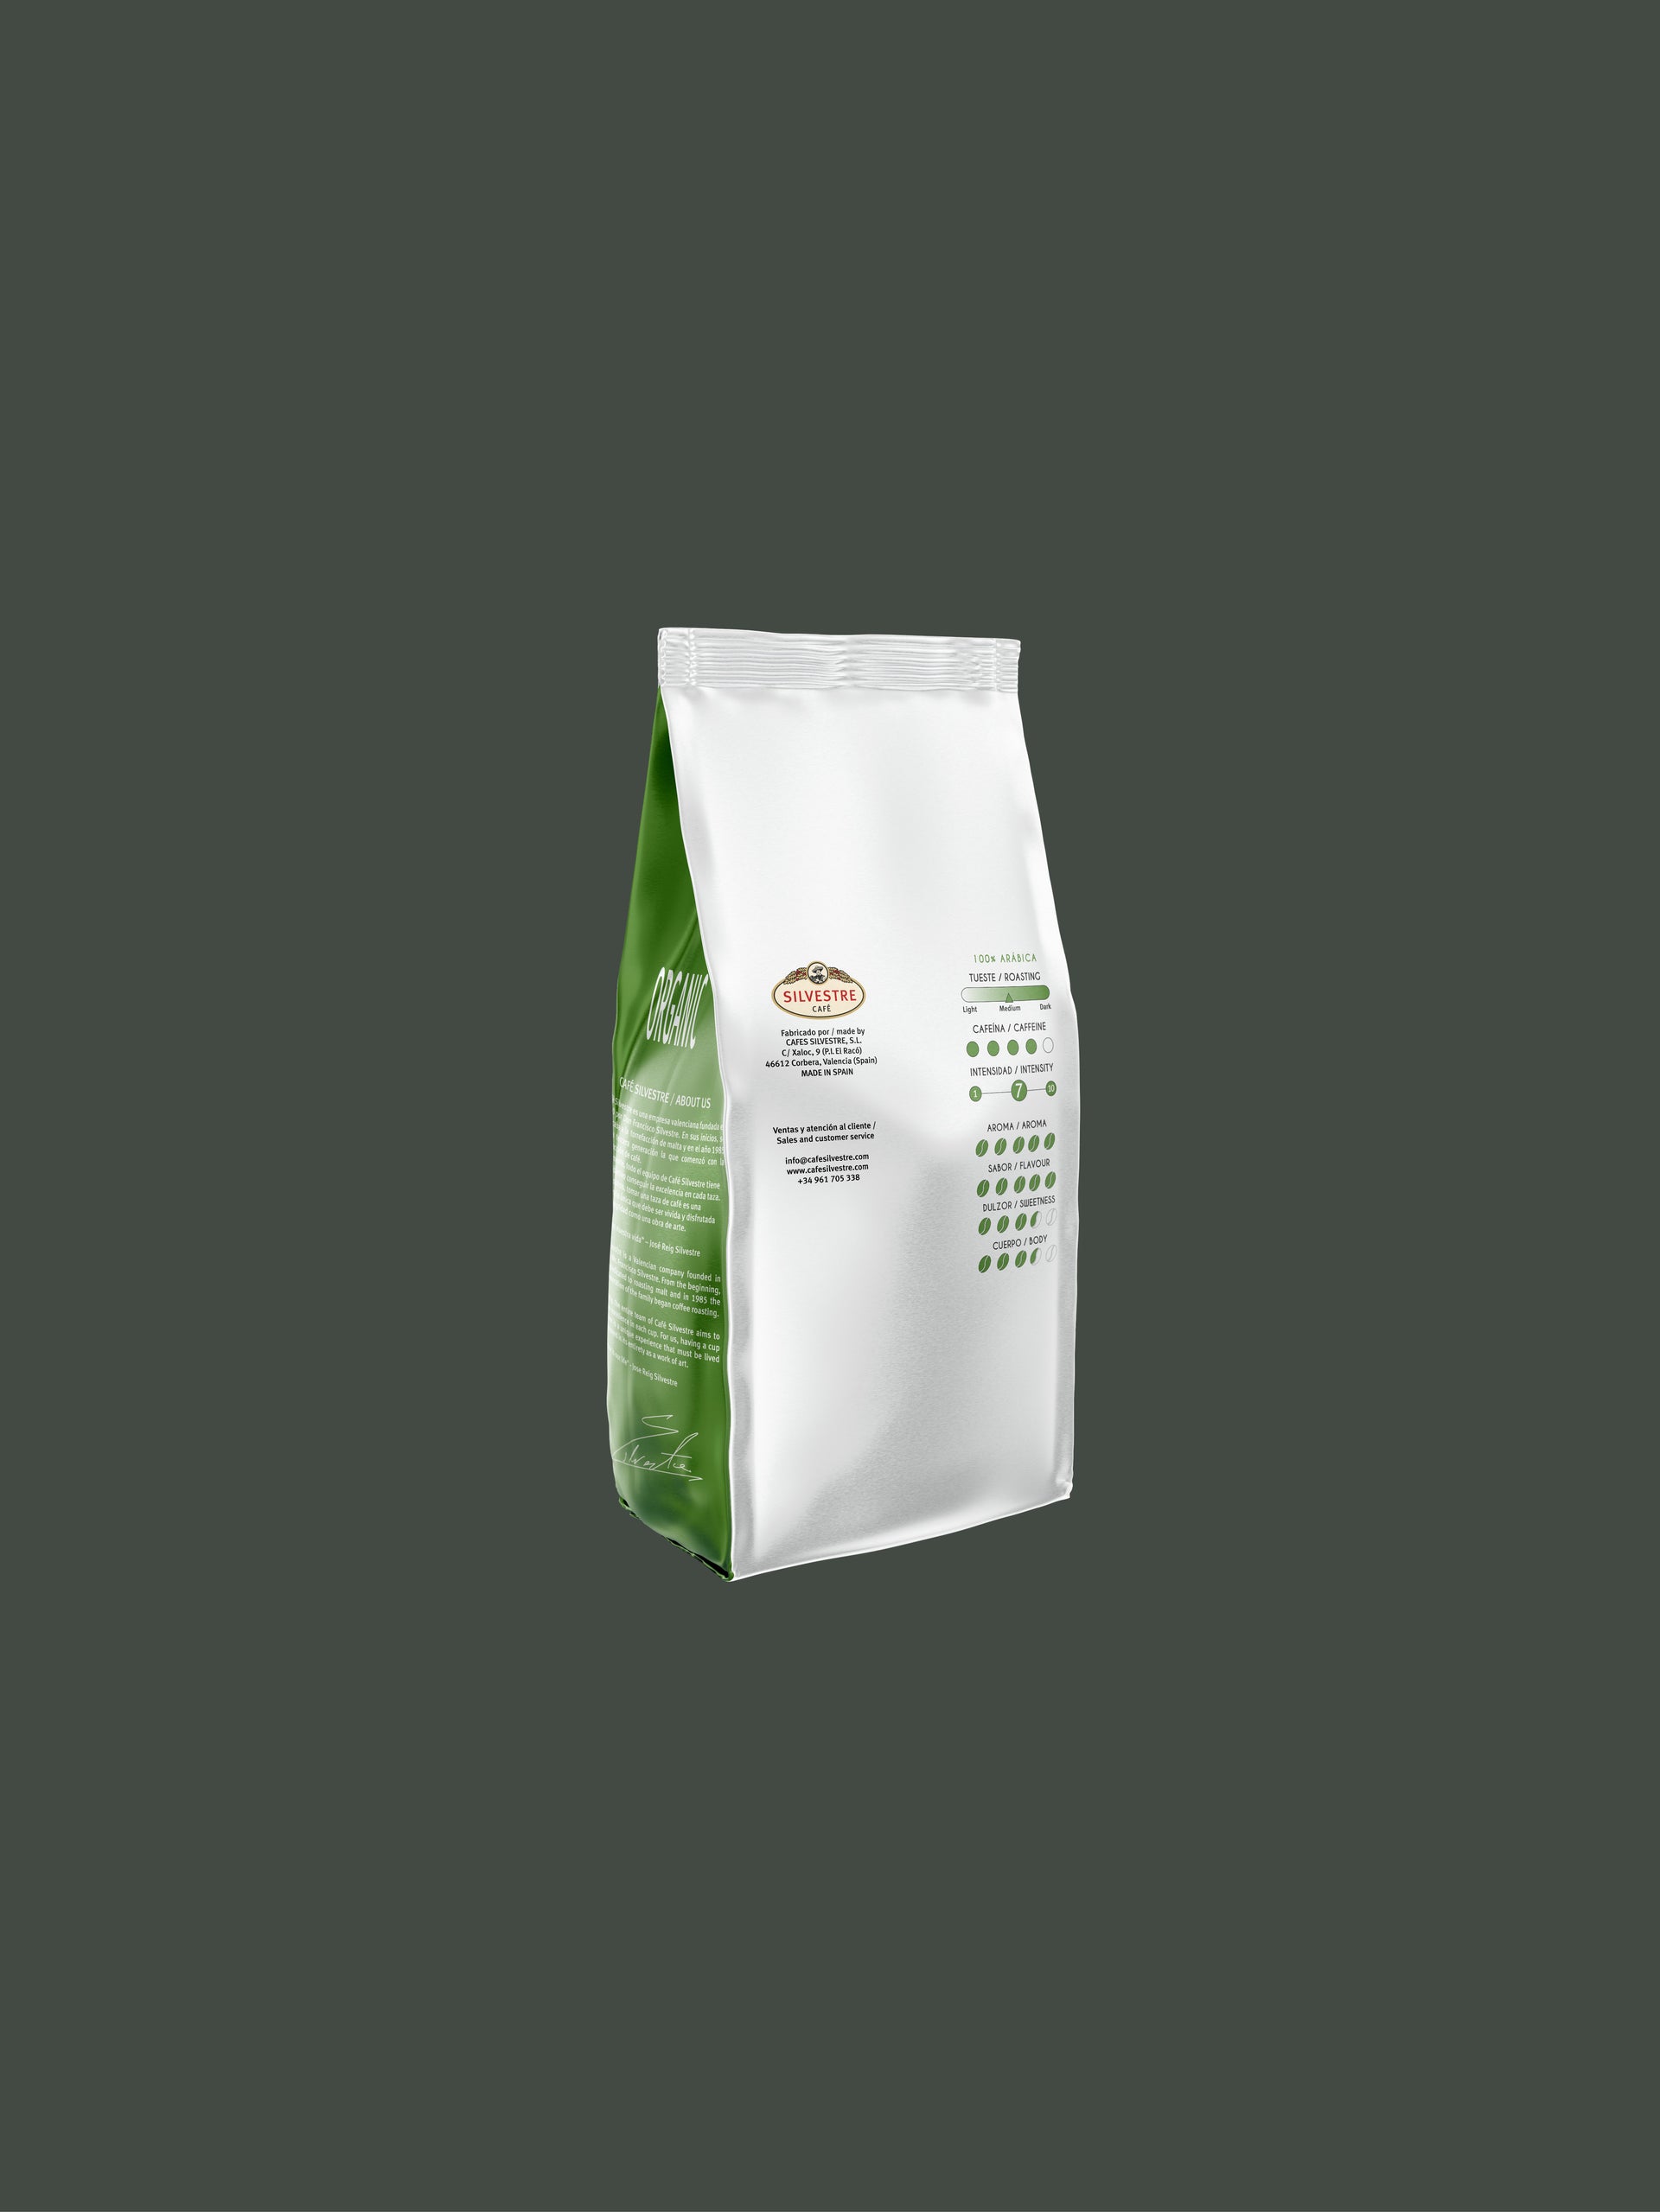 Découvrez ORGANIC Café Grains 1KG : 100% Arabica Bio, durable et fraîchement protégé